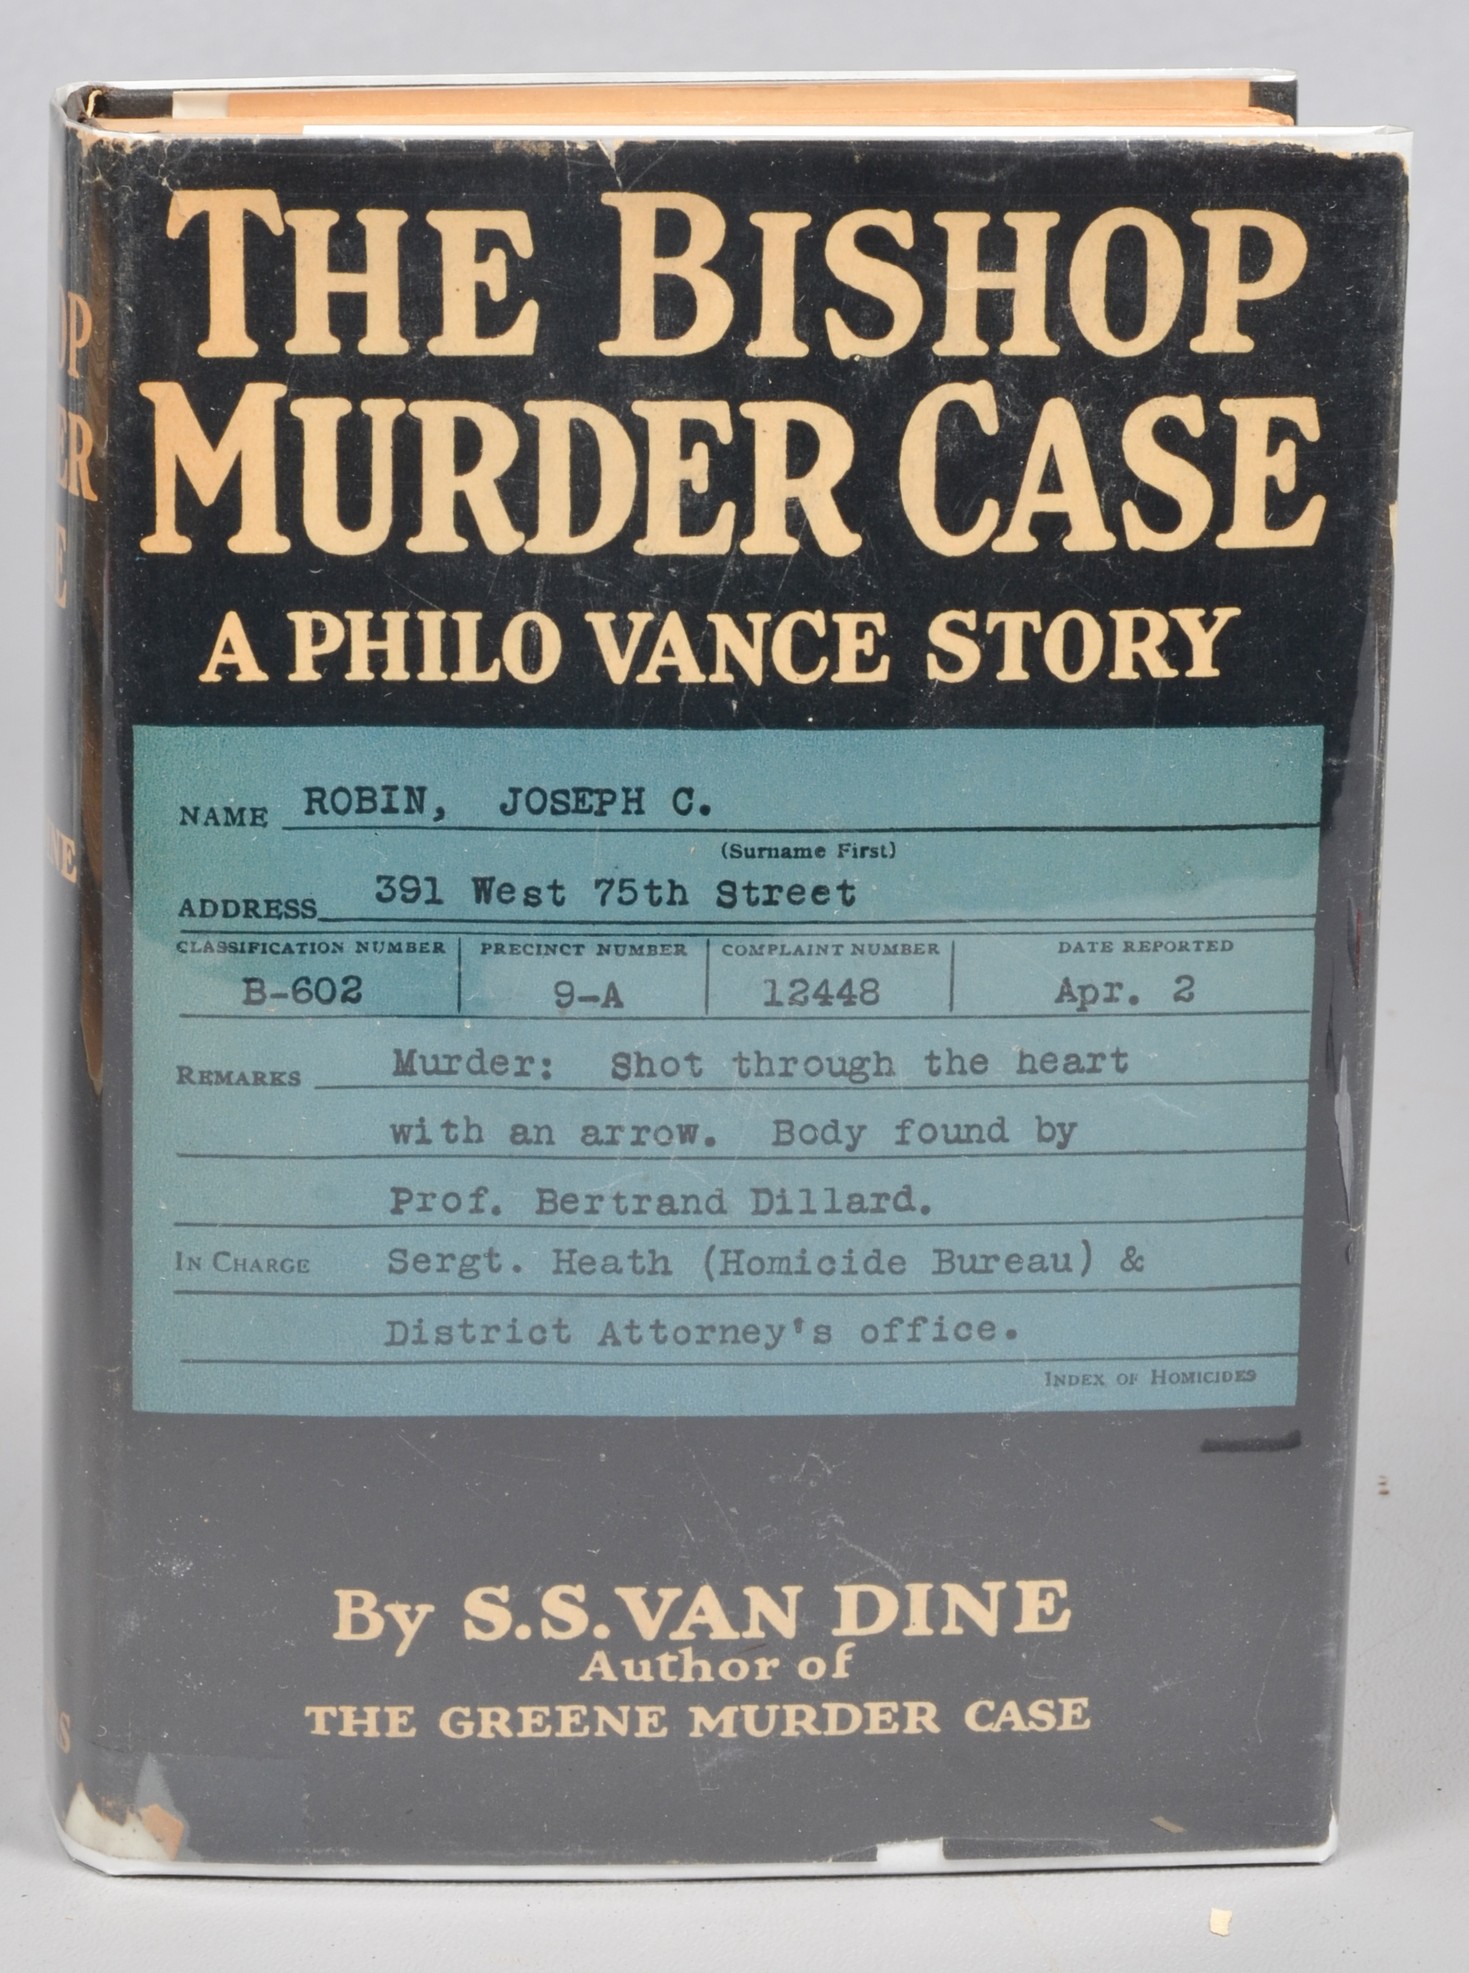 The Bishop Murder Case, first edition,